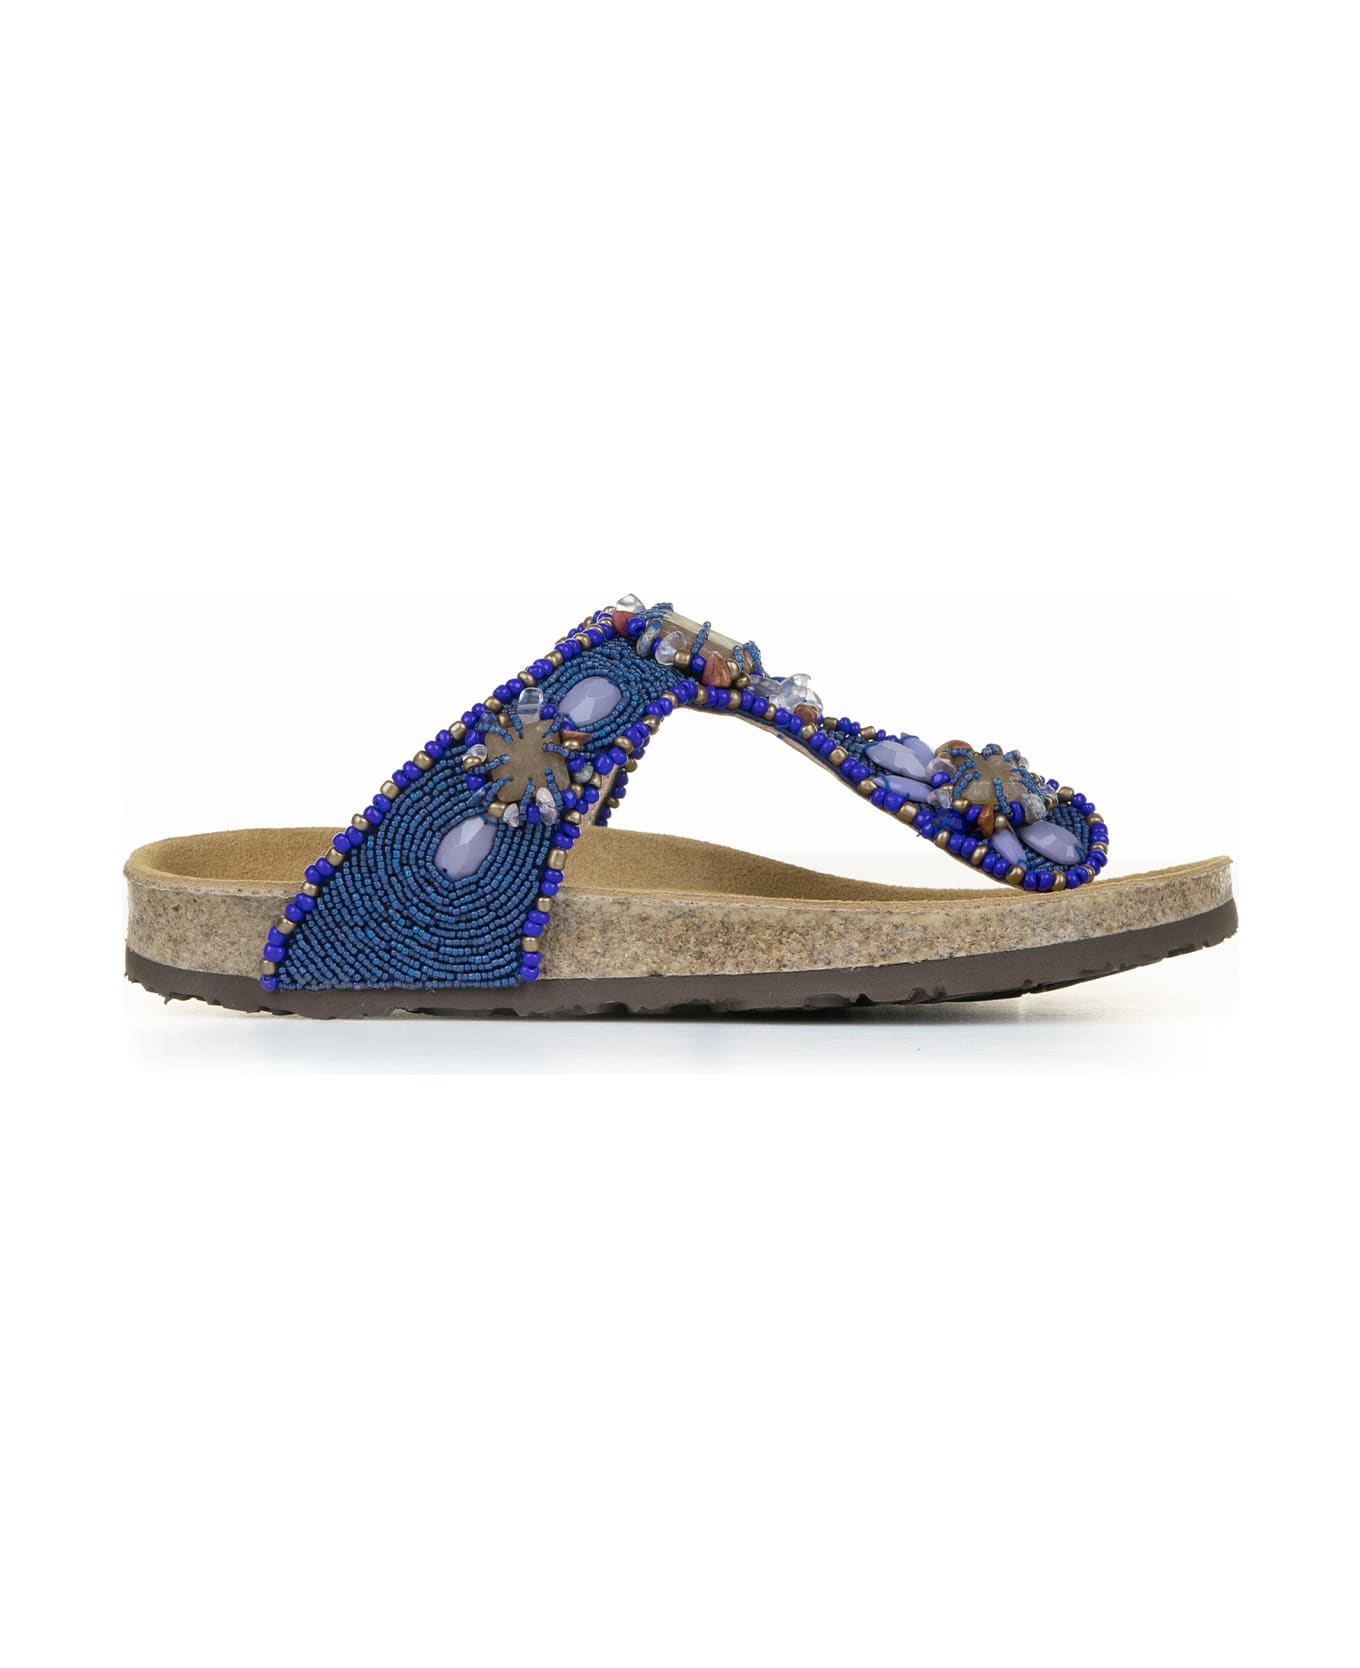 Malìparmi Flip-flops With Jewelery Embroidery On Beads - BLU/BEIGE